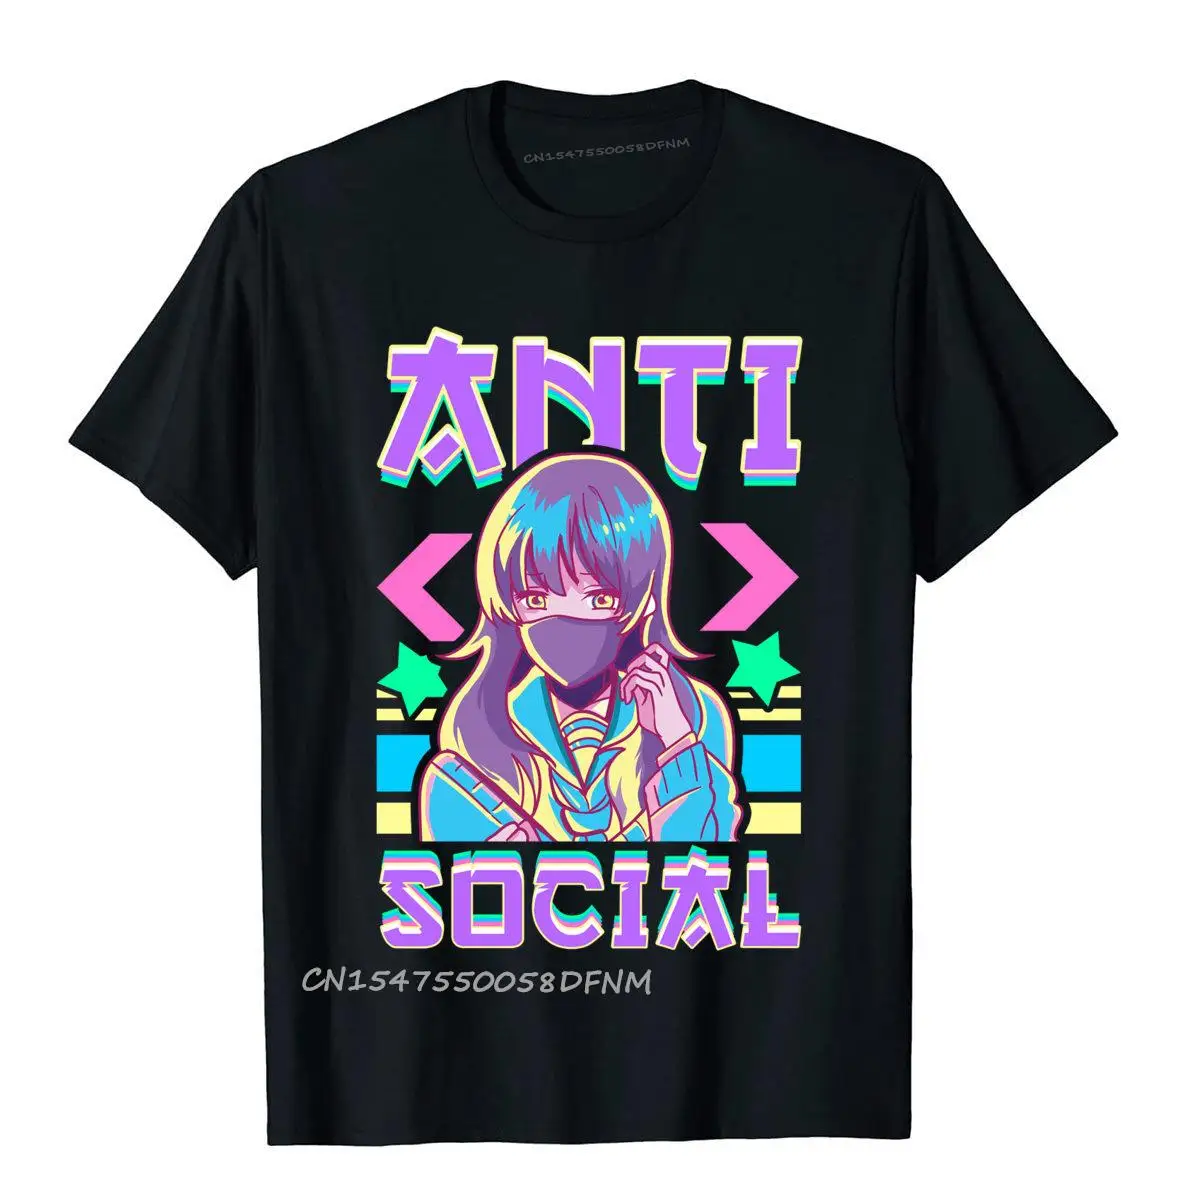 

Милые футболки с рисунком персонажа из аниме Anti Social Vaporwave, оптовая продажа, хлопковые мужские футболки премиум-класса в китайском стиле